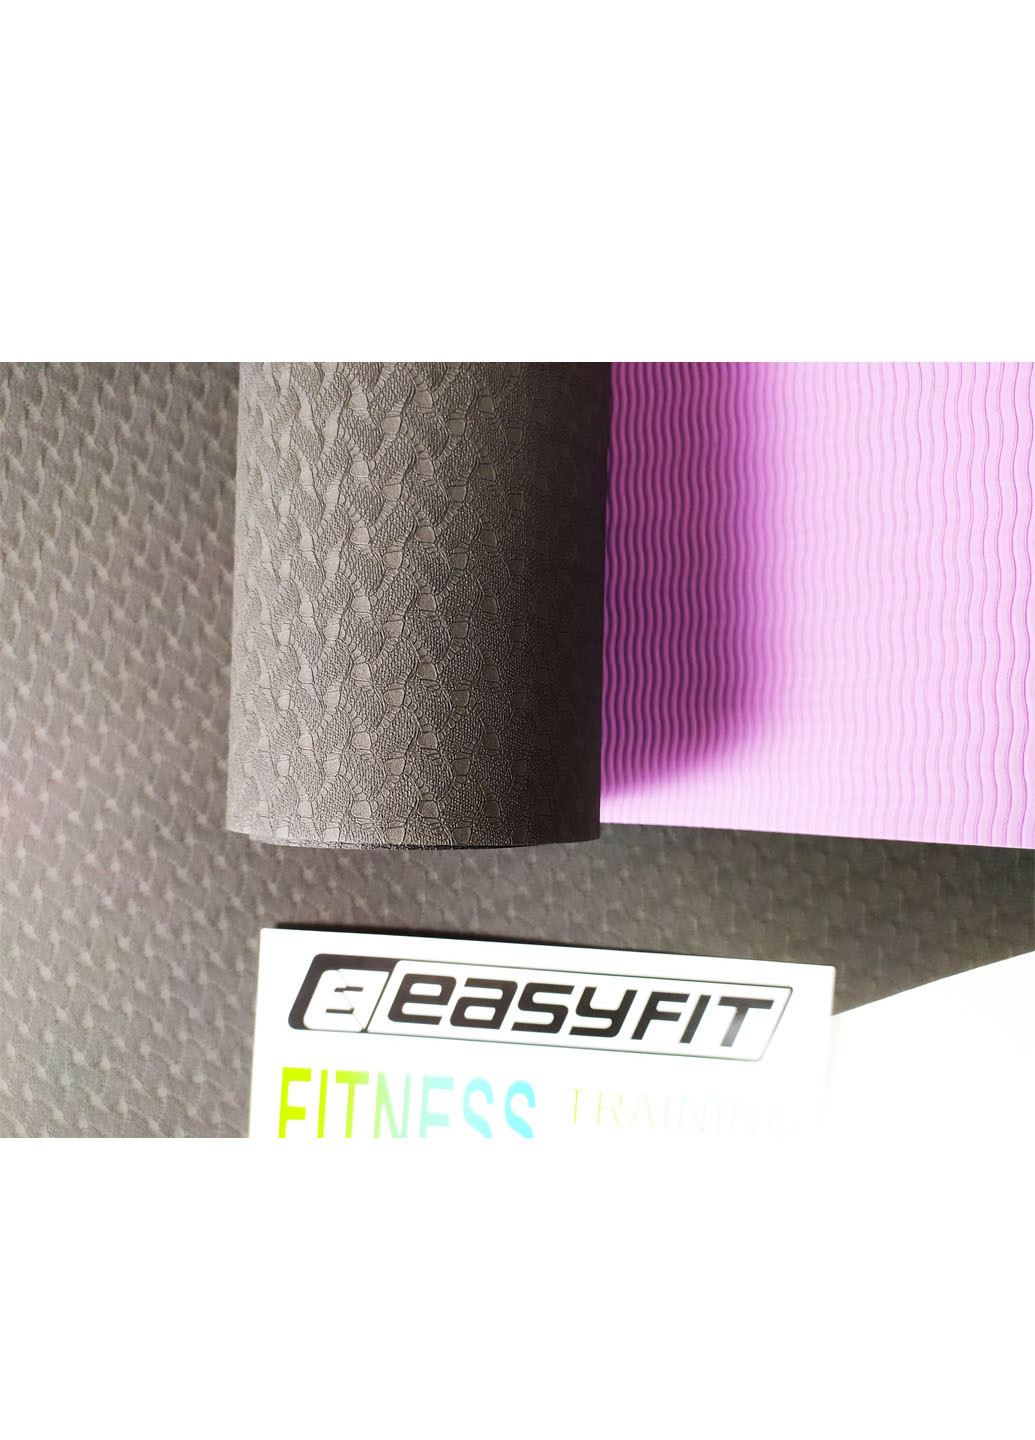 Килимок для йоги TPE + TC ECO-Friendly 6 мм чорний з фіолетовим (мат-каремат спортивний, йогамат для фітнесу, пілатесу) EasyFit (237596272)